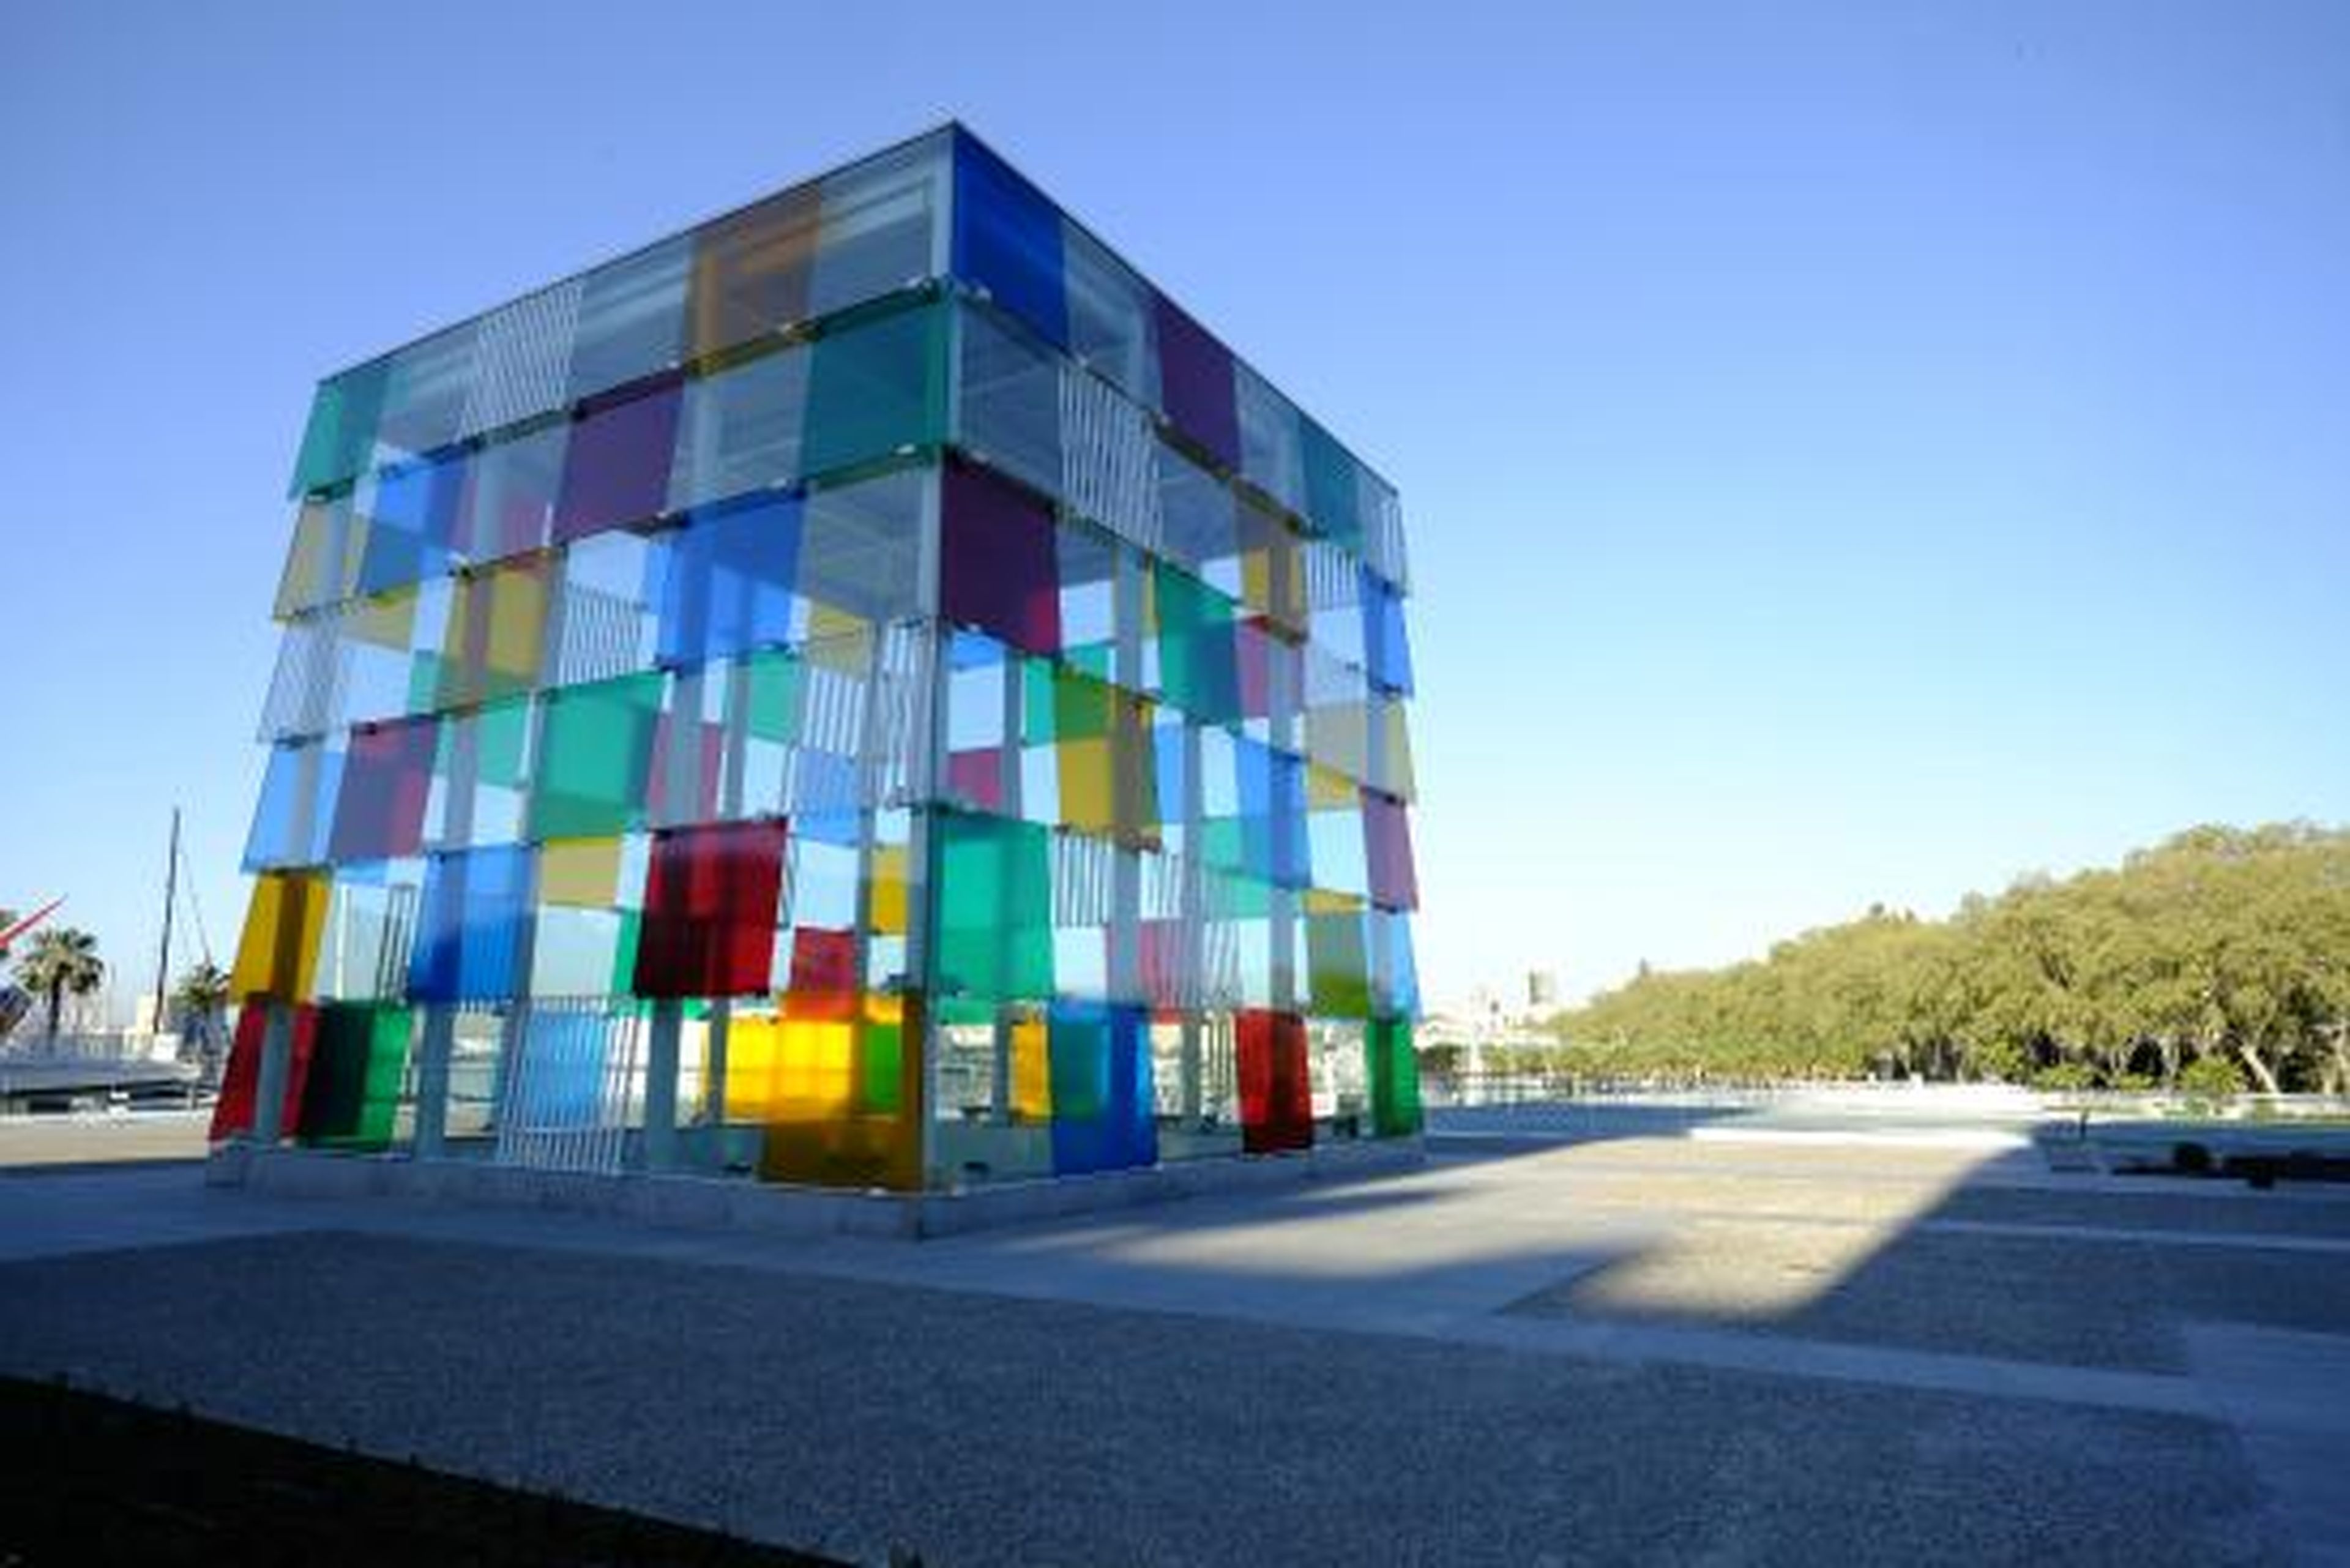 El museo Pompidou en Málaga es uno de los atractivos turísticos de la ciudad.